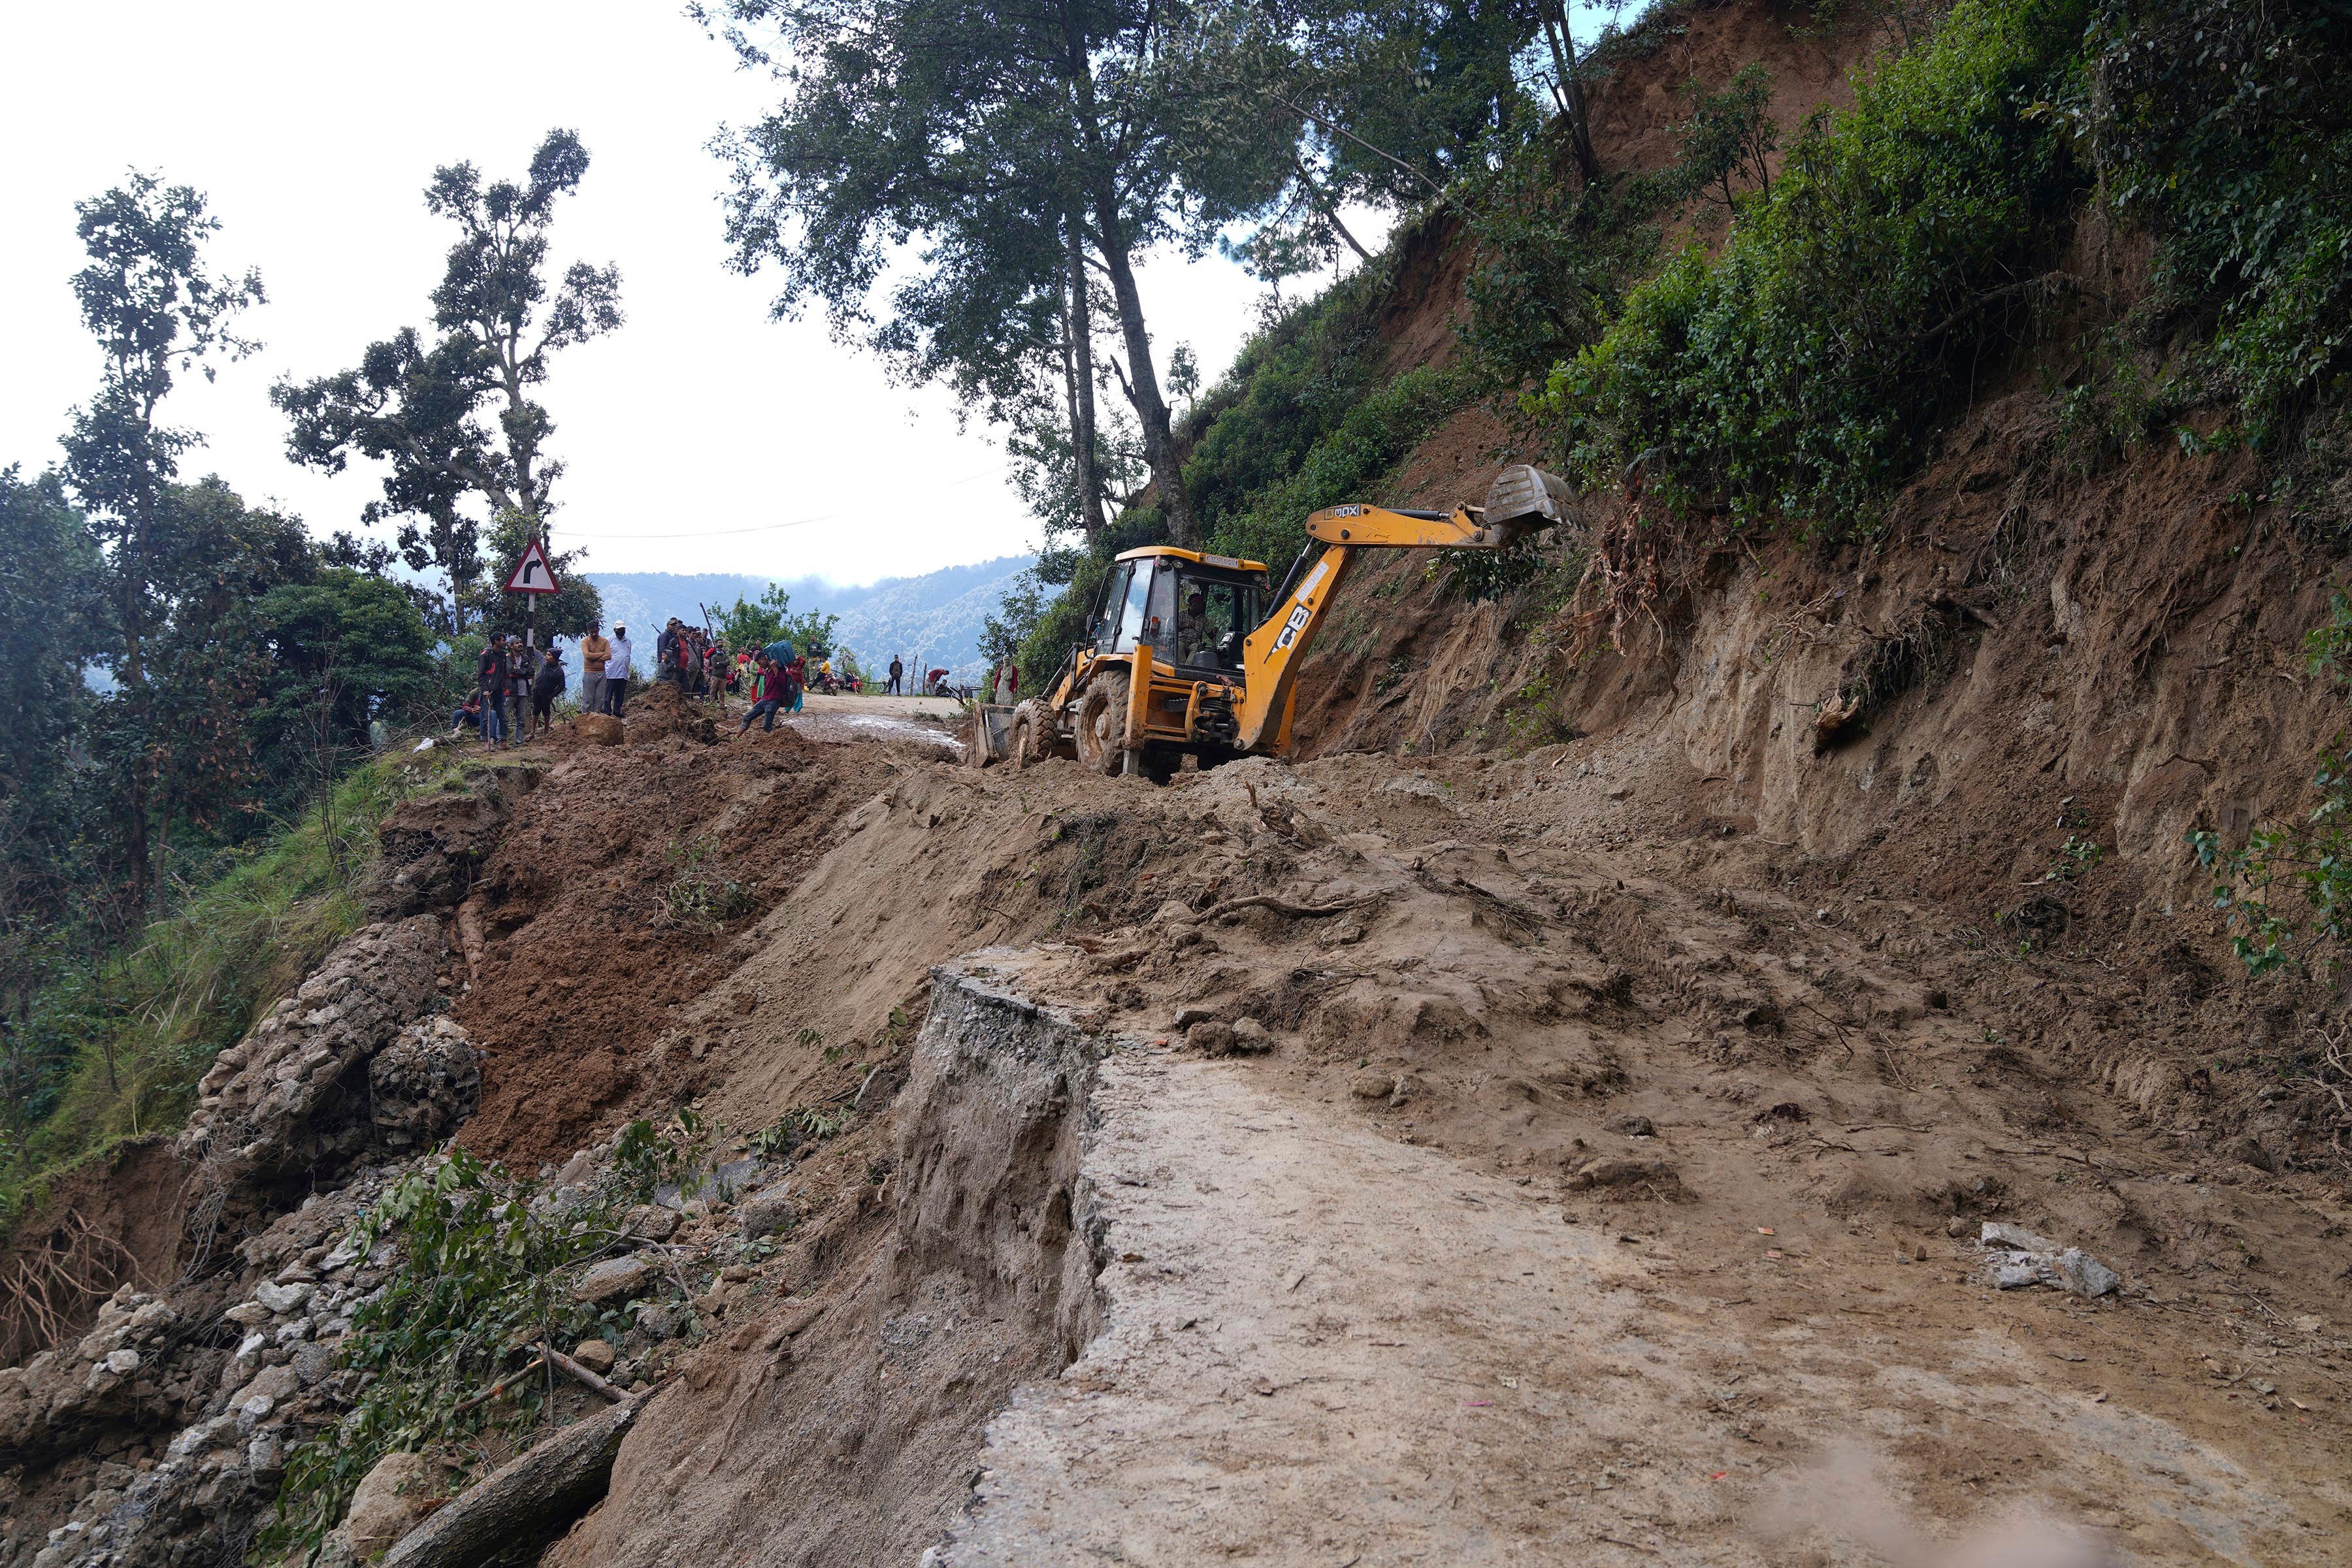 Nepal has endured heavy rain this week, sparking floods and landslides